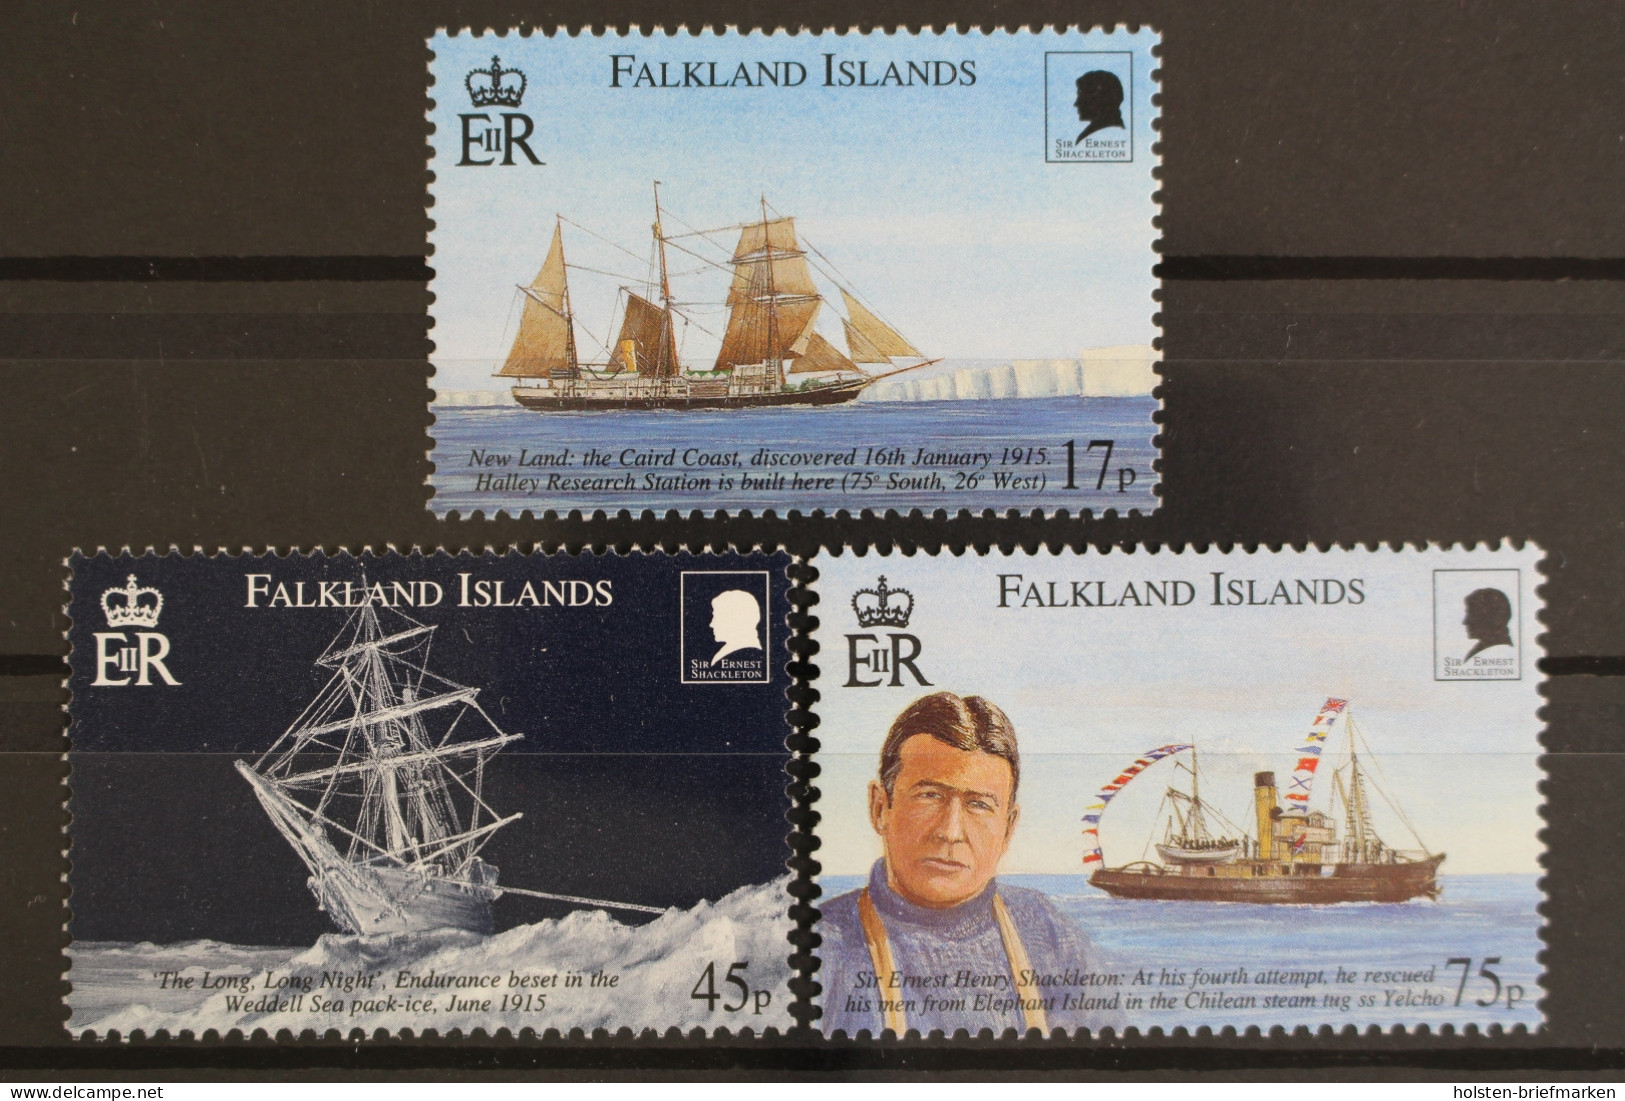 Falklandinseln, Schiffe, MiNr. 776-778, Postfrisch - Falkland